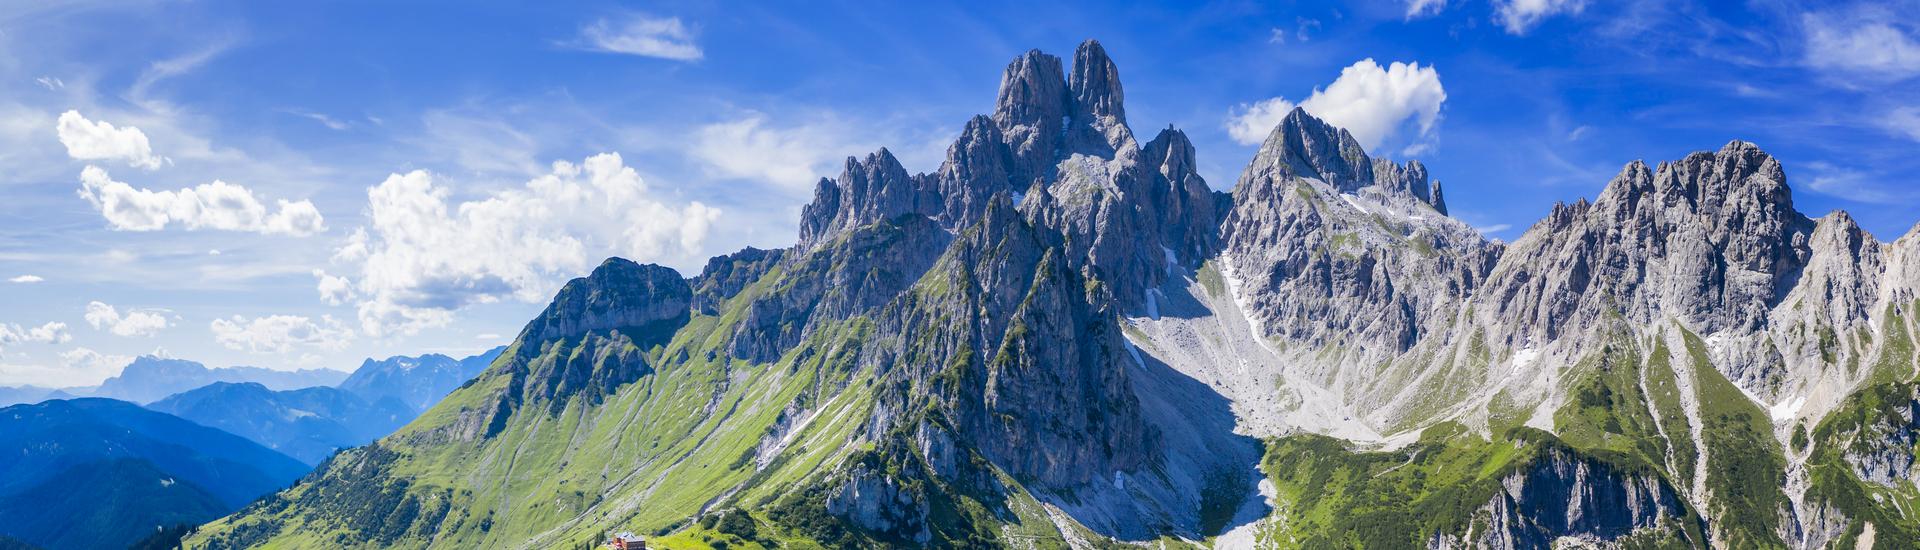 Alpy Austriackie - górski raj